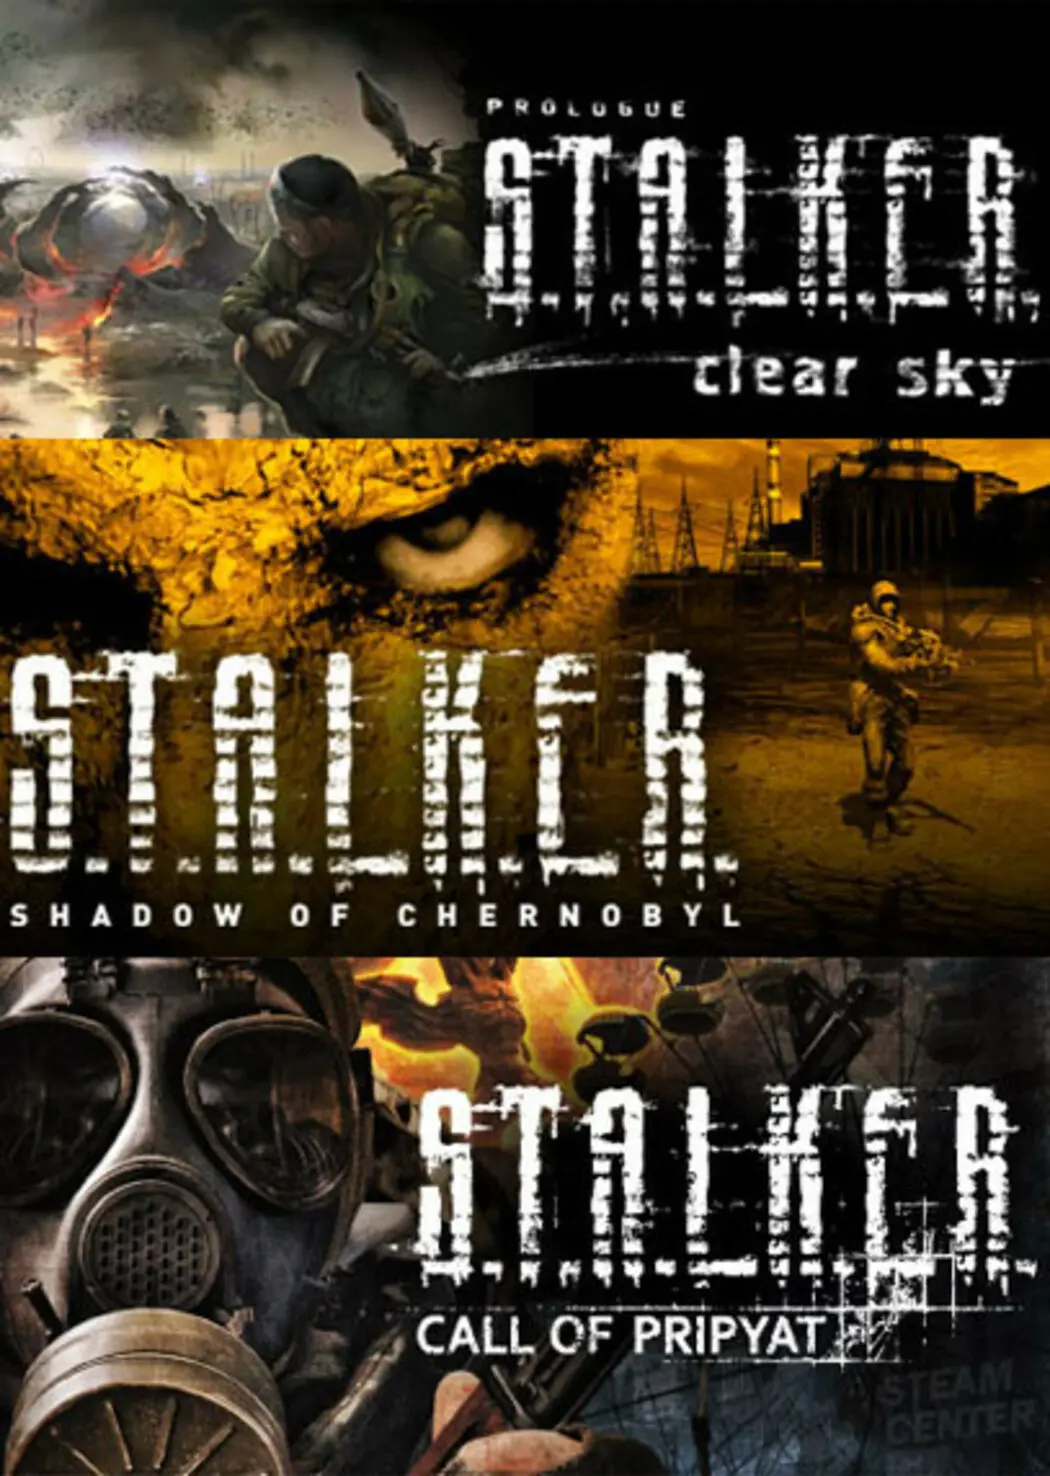 S.T.A.L.K.E.R. Bundle (PC) - Steam - Digital Code